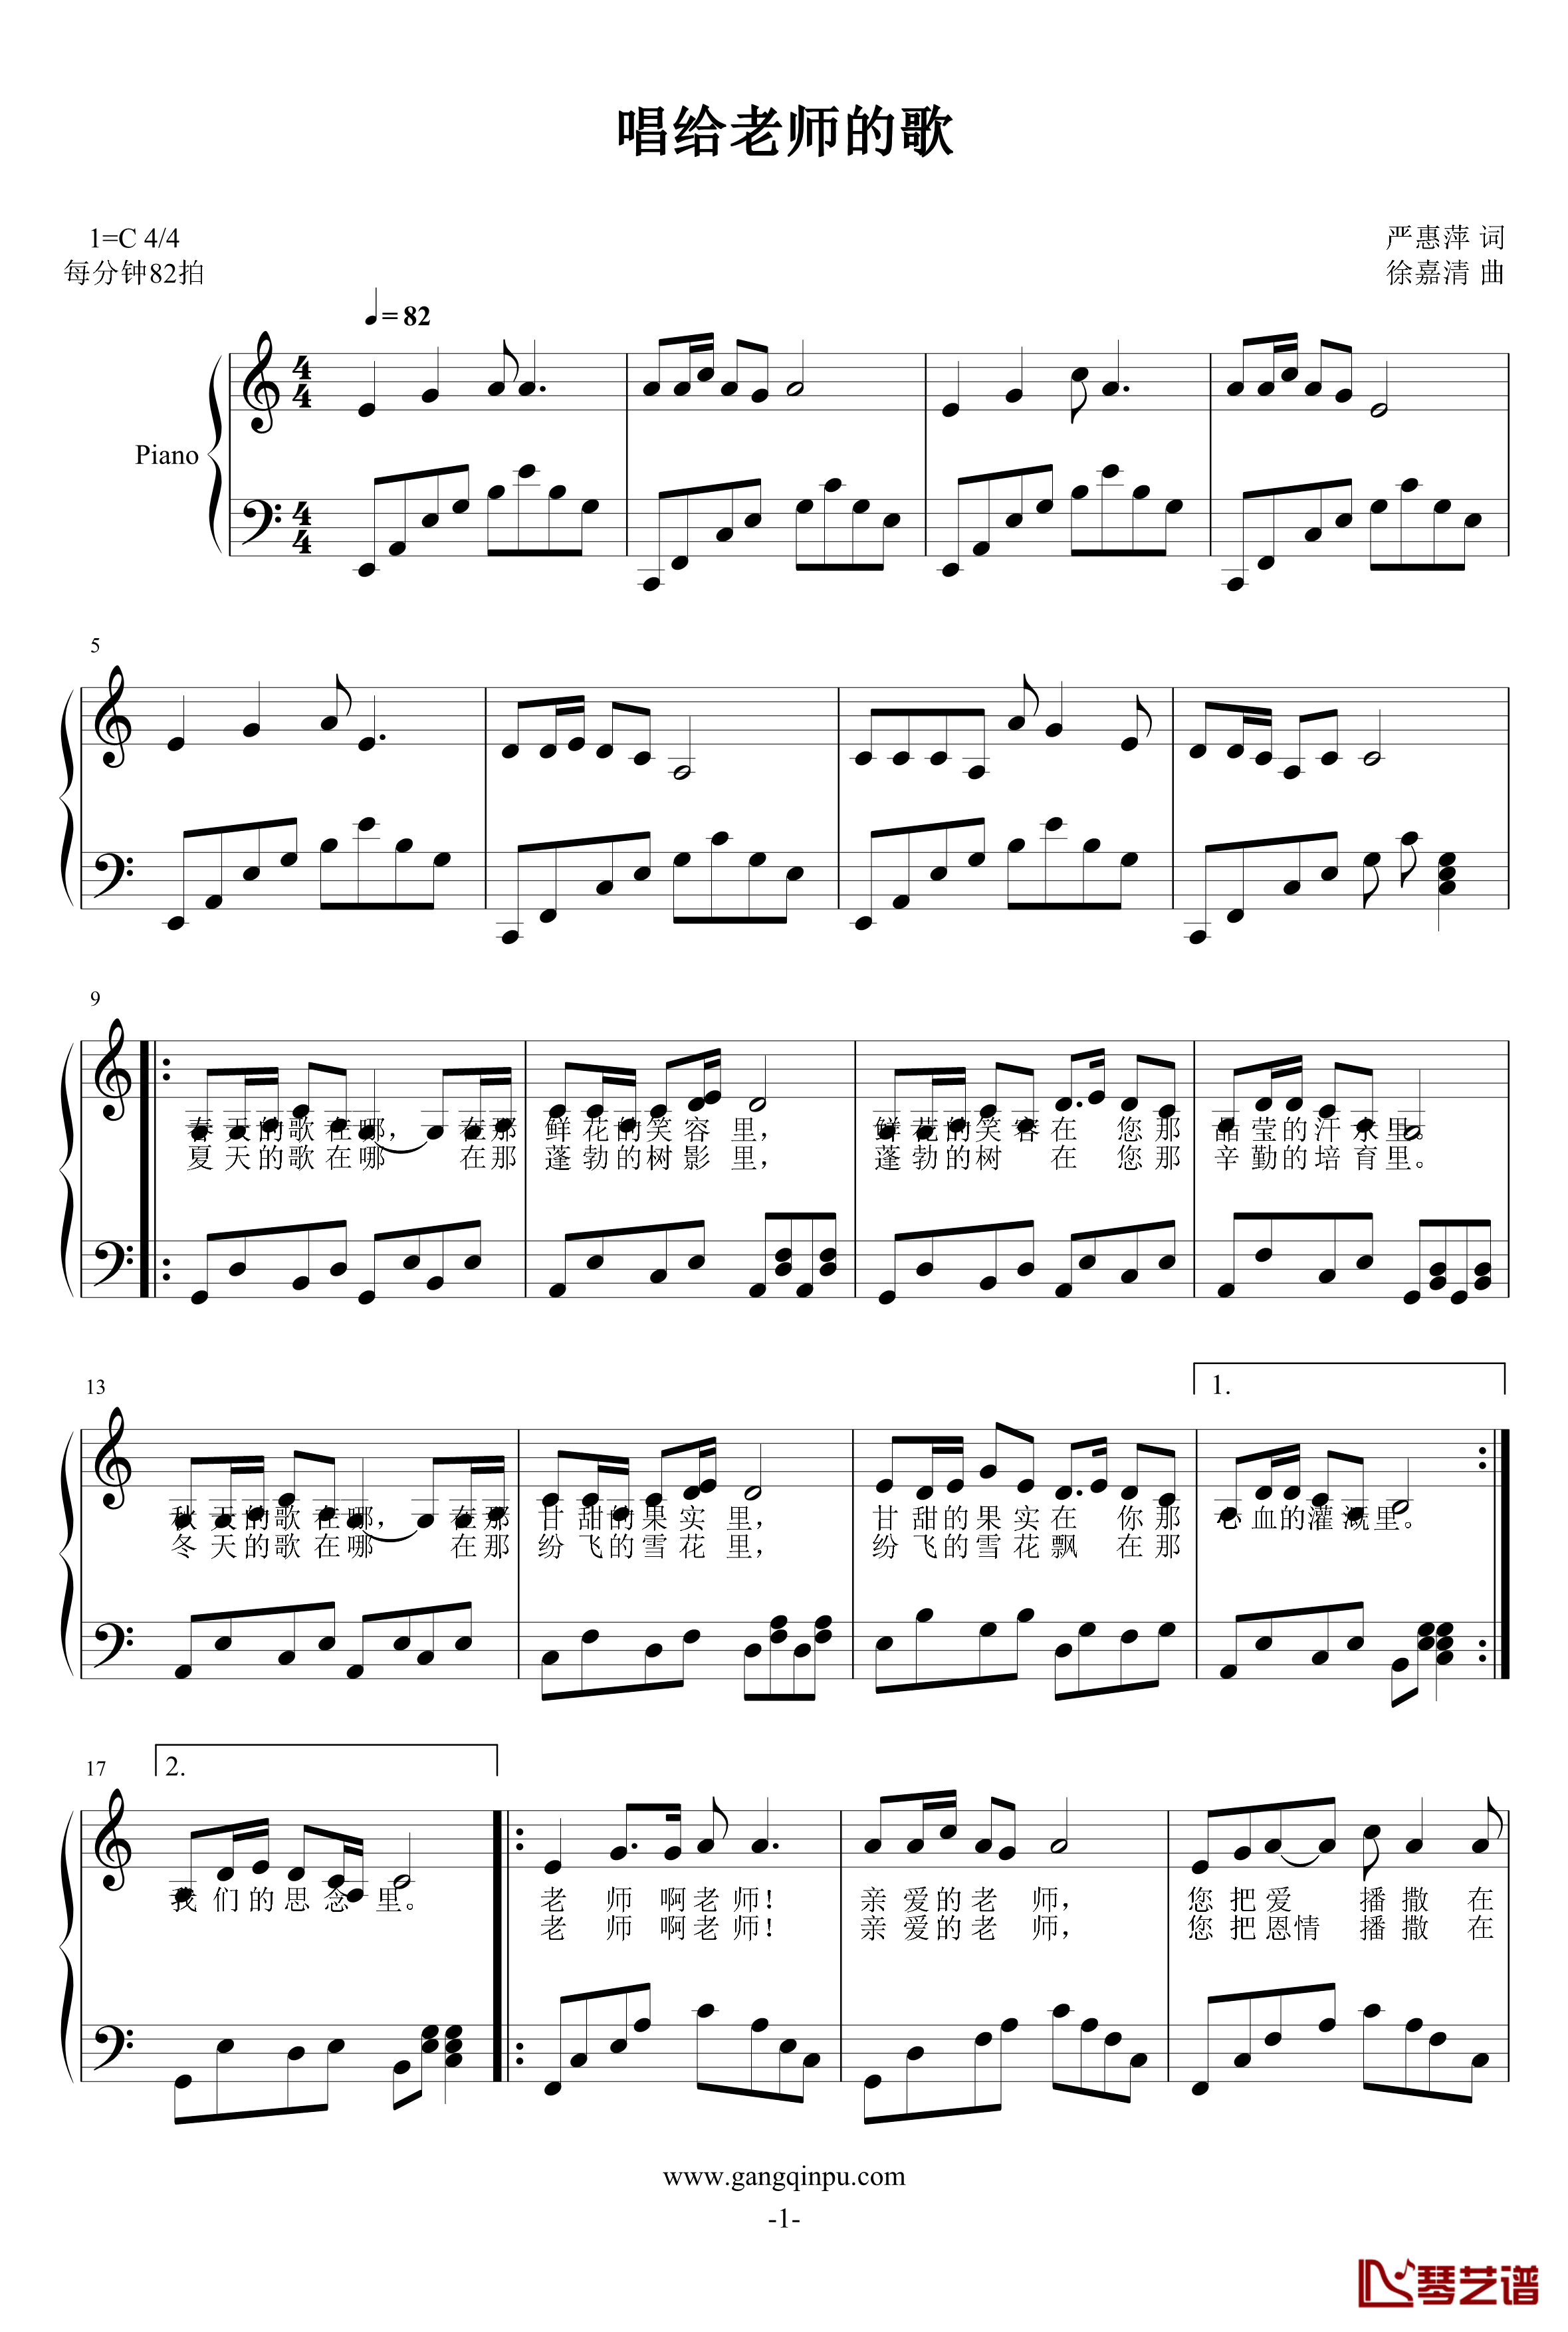 唱给老师的歌钢琴谱-段嘉歆1